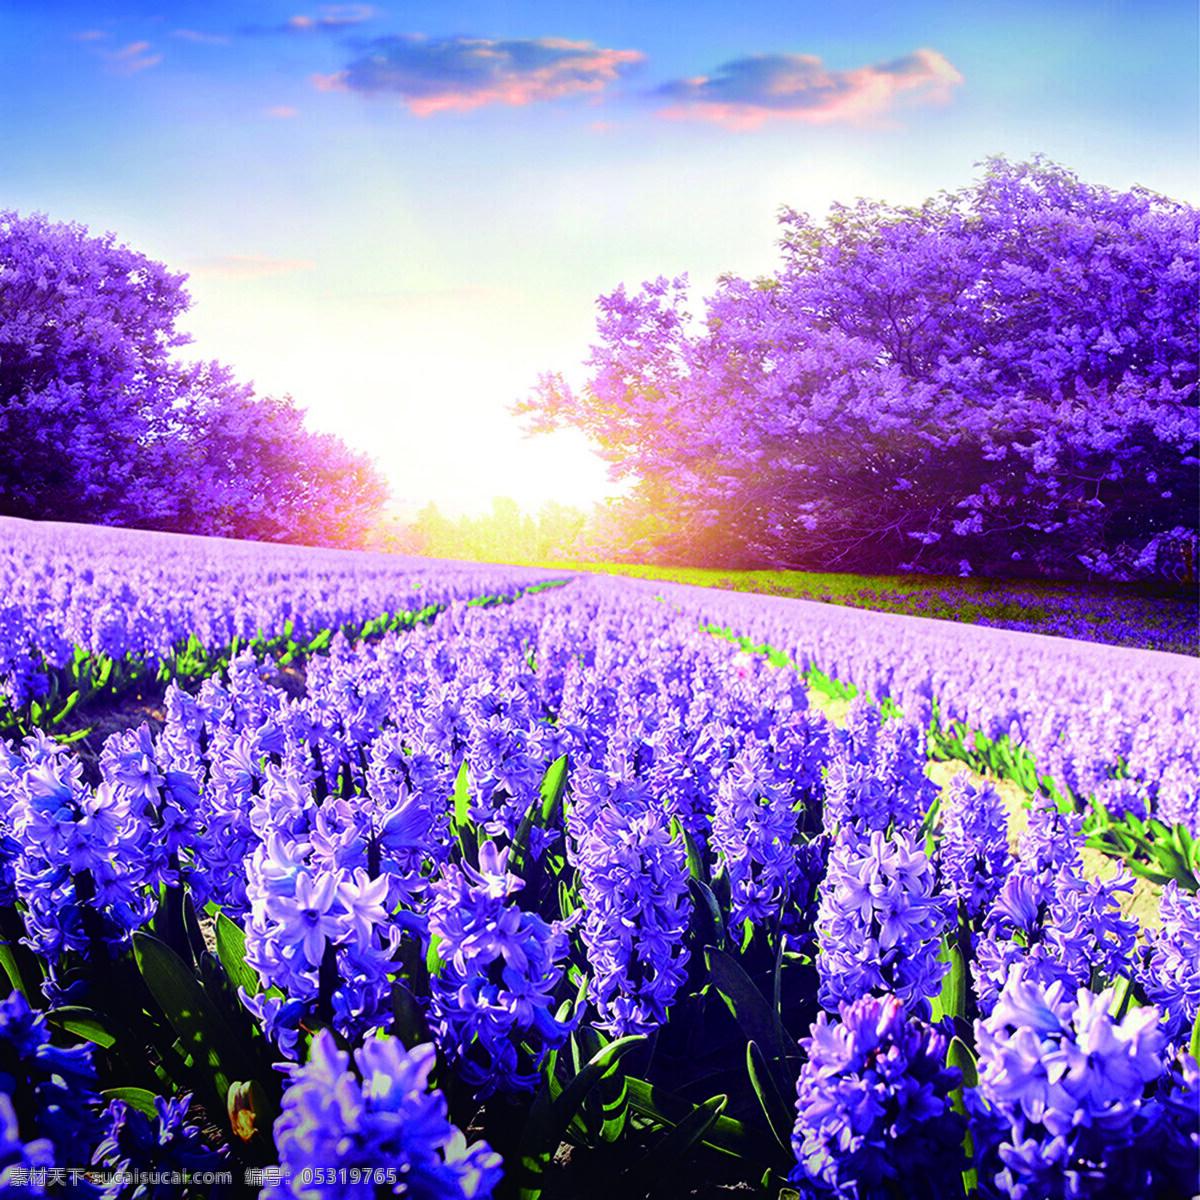 蓝天 白云 风景 浪漫 温 薰衣草 风景图 紫色 风情 温馨 自然景观 田园风光